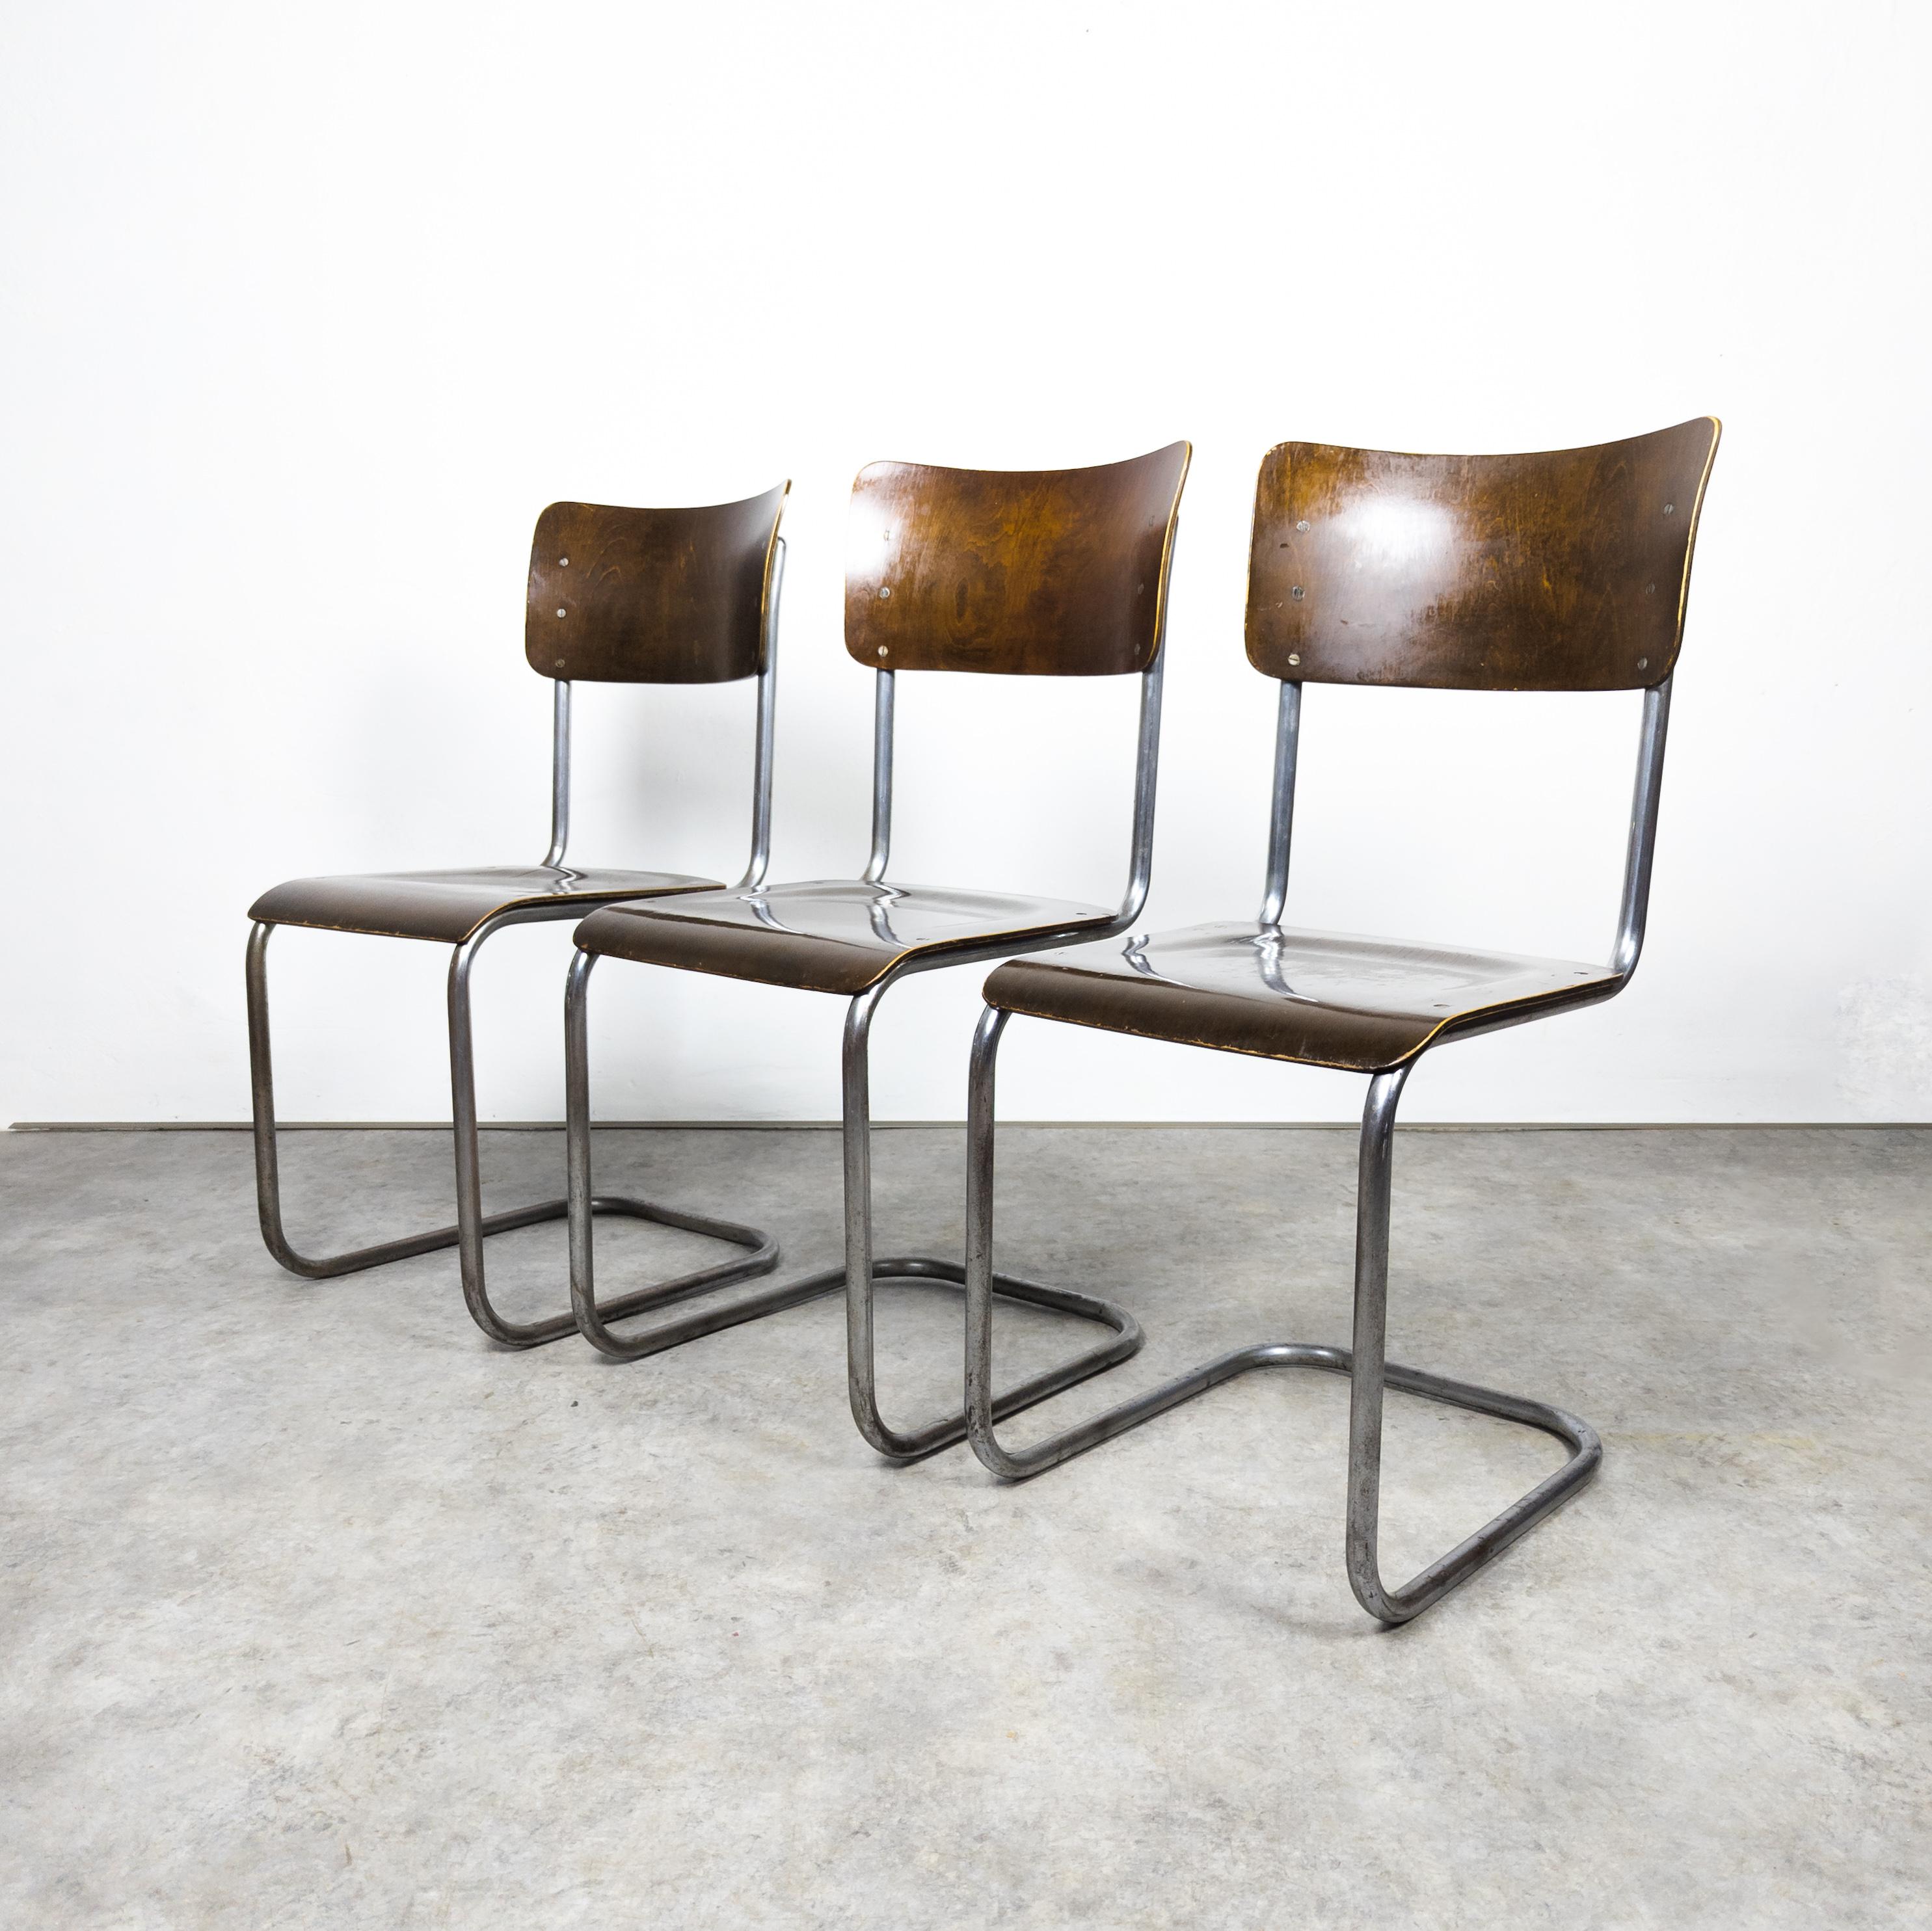 Rare version fabriquée par Vichr & co. dans l'ancienne Tchécoslovaquie dans les années 1930. Ensemble de trois chaises cantilever Bauhaus avec une structure robuste en acier tubulaire, mettant en valeur le charme vintage. Les éléments en acier